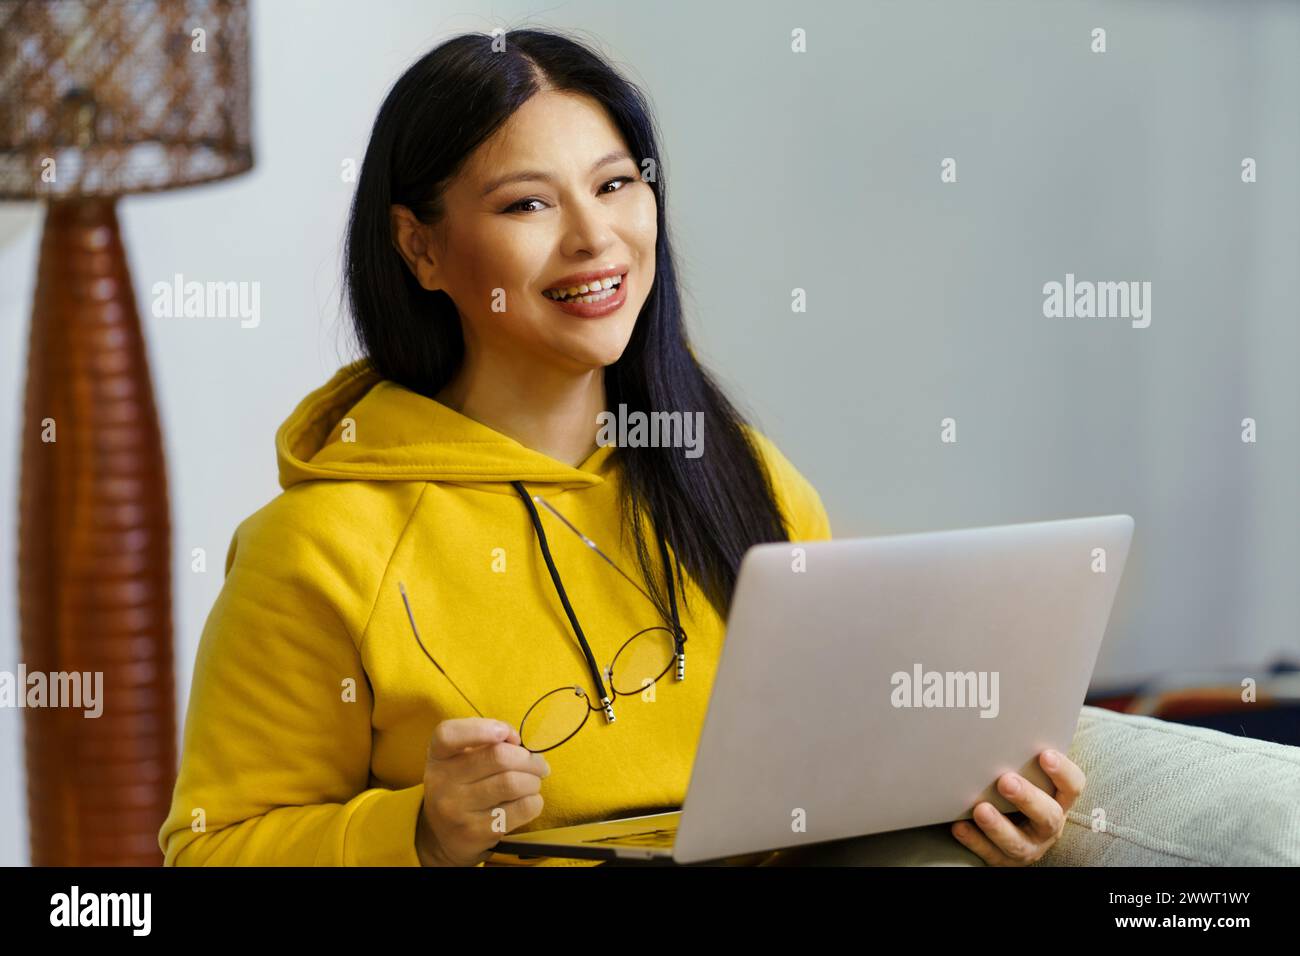 Una donna con cappuccio giallo sorride e tiene in mano un notebook. Sta indossando gli occhiali e si sta godendo il suo tempo Foto Stock